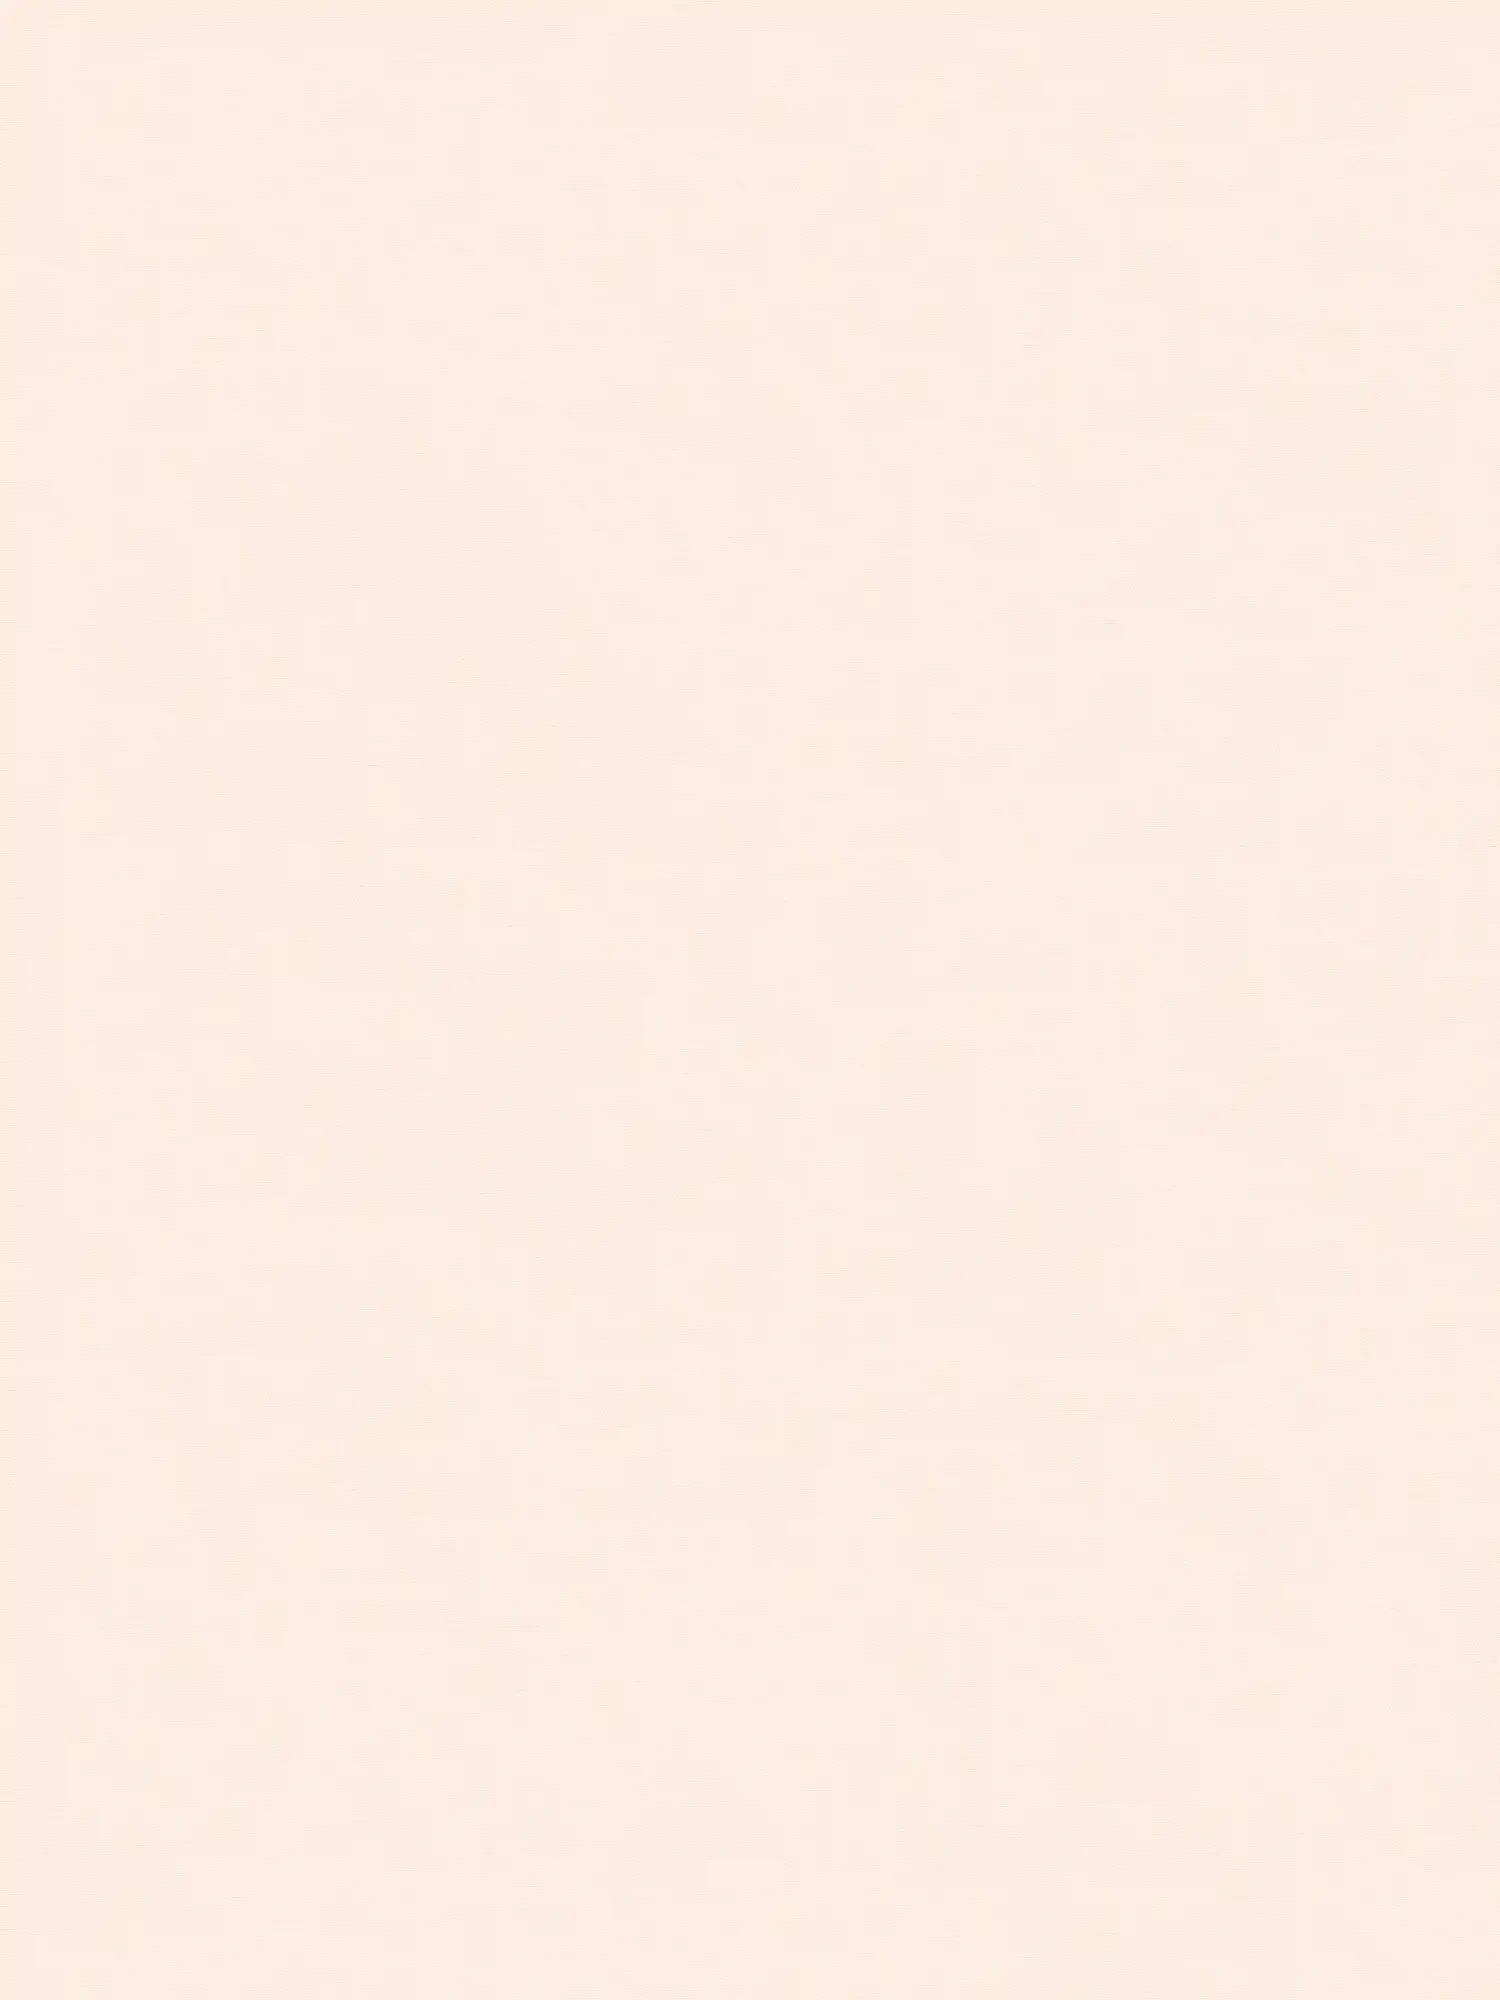 Einfarbige Tapete Rosa Pastell für Babyzimmer
